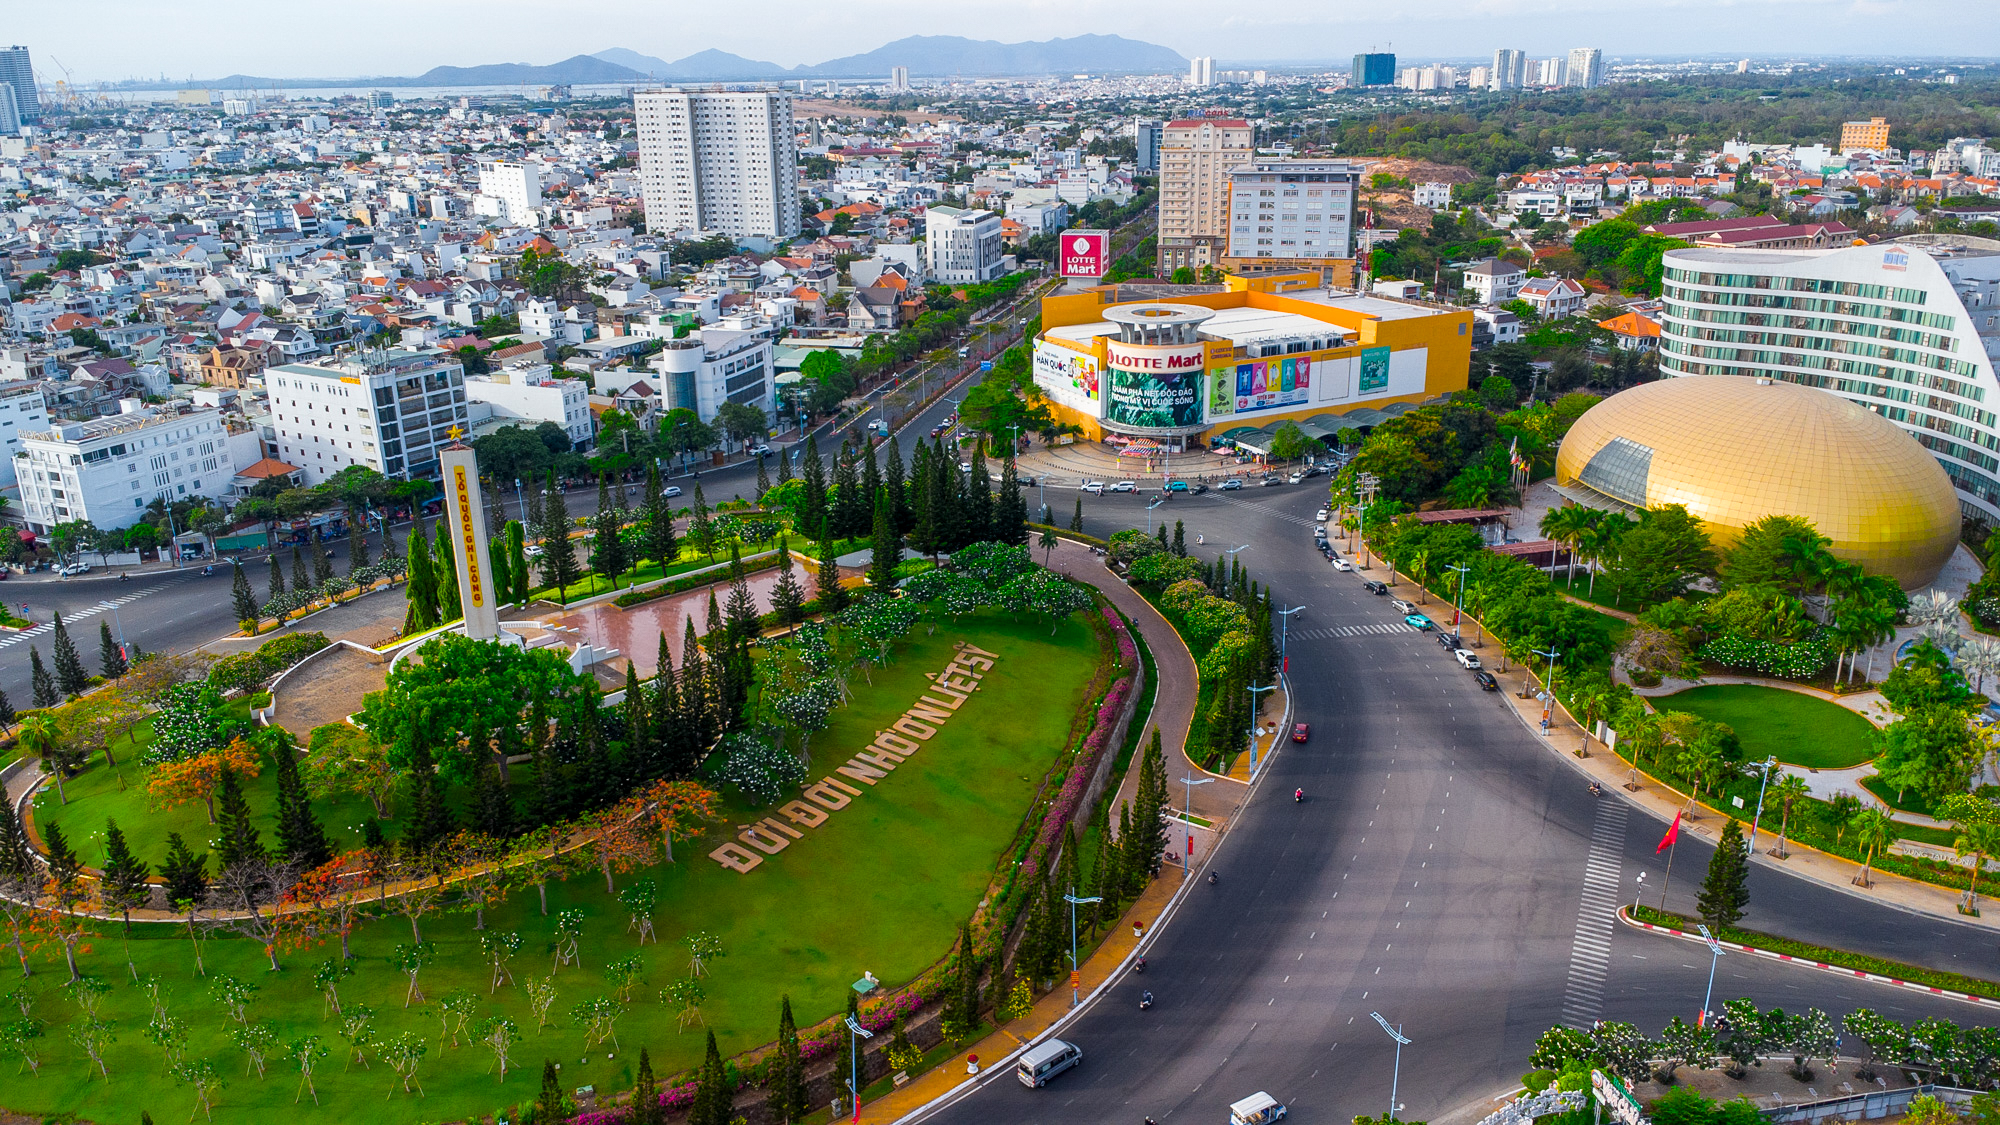 Đô thị loại một duy nhất nằm trên bán đảo, vừa có bờ biển đẹp top 5 Việt Nam, vừa thuộc tỉnh sở hữu hơn 93% trữ lượng dầu khí cả nước- Ảnh 1.